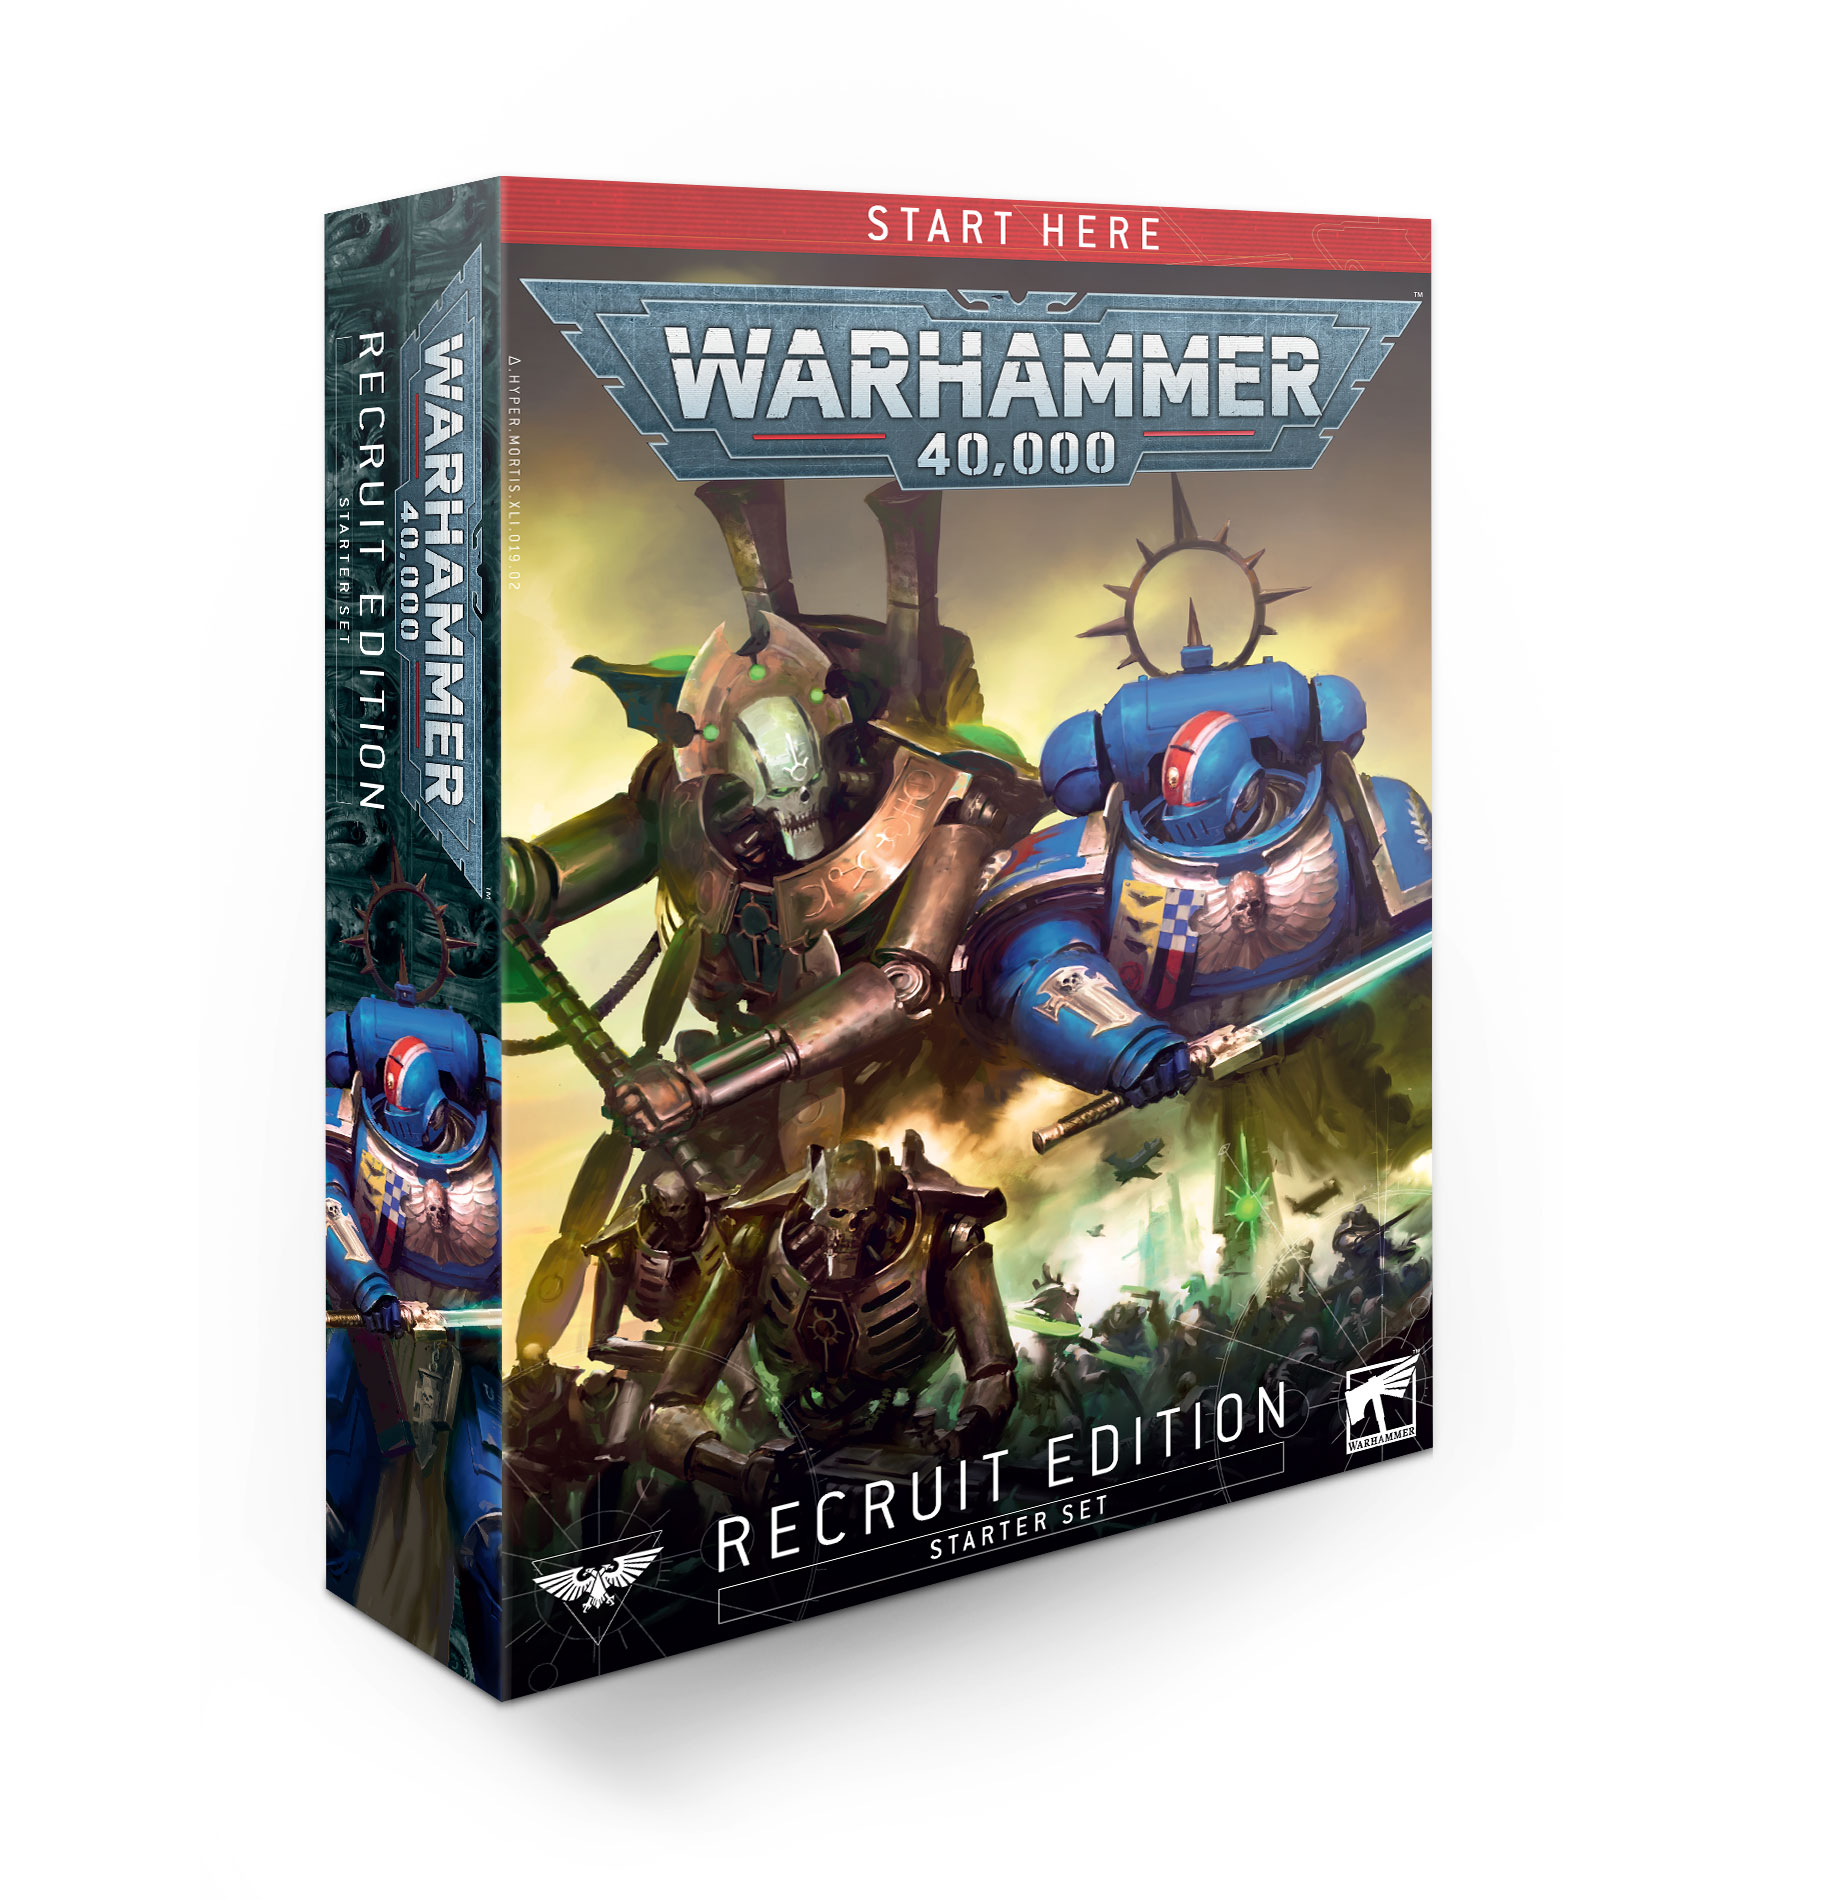 Warhammer 40k edition recrue